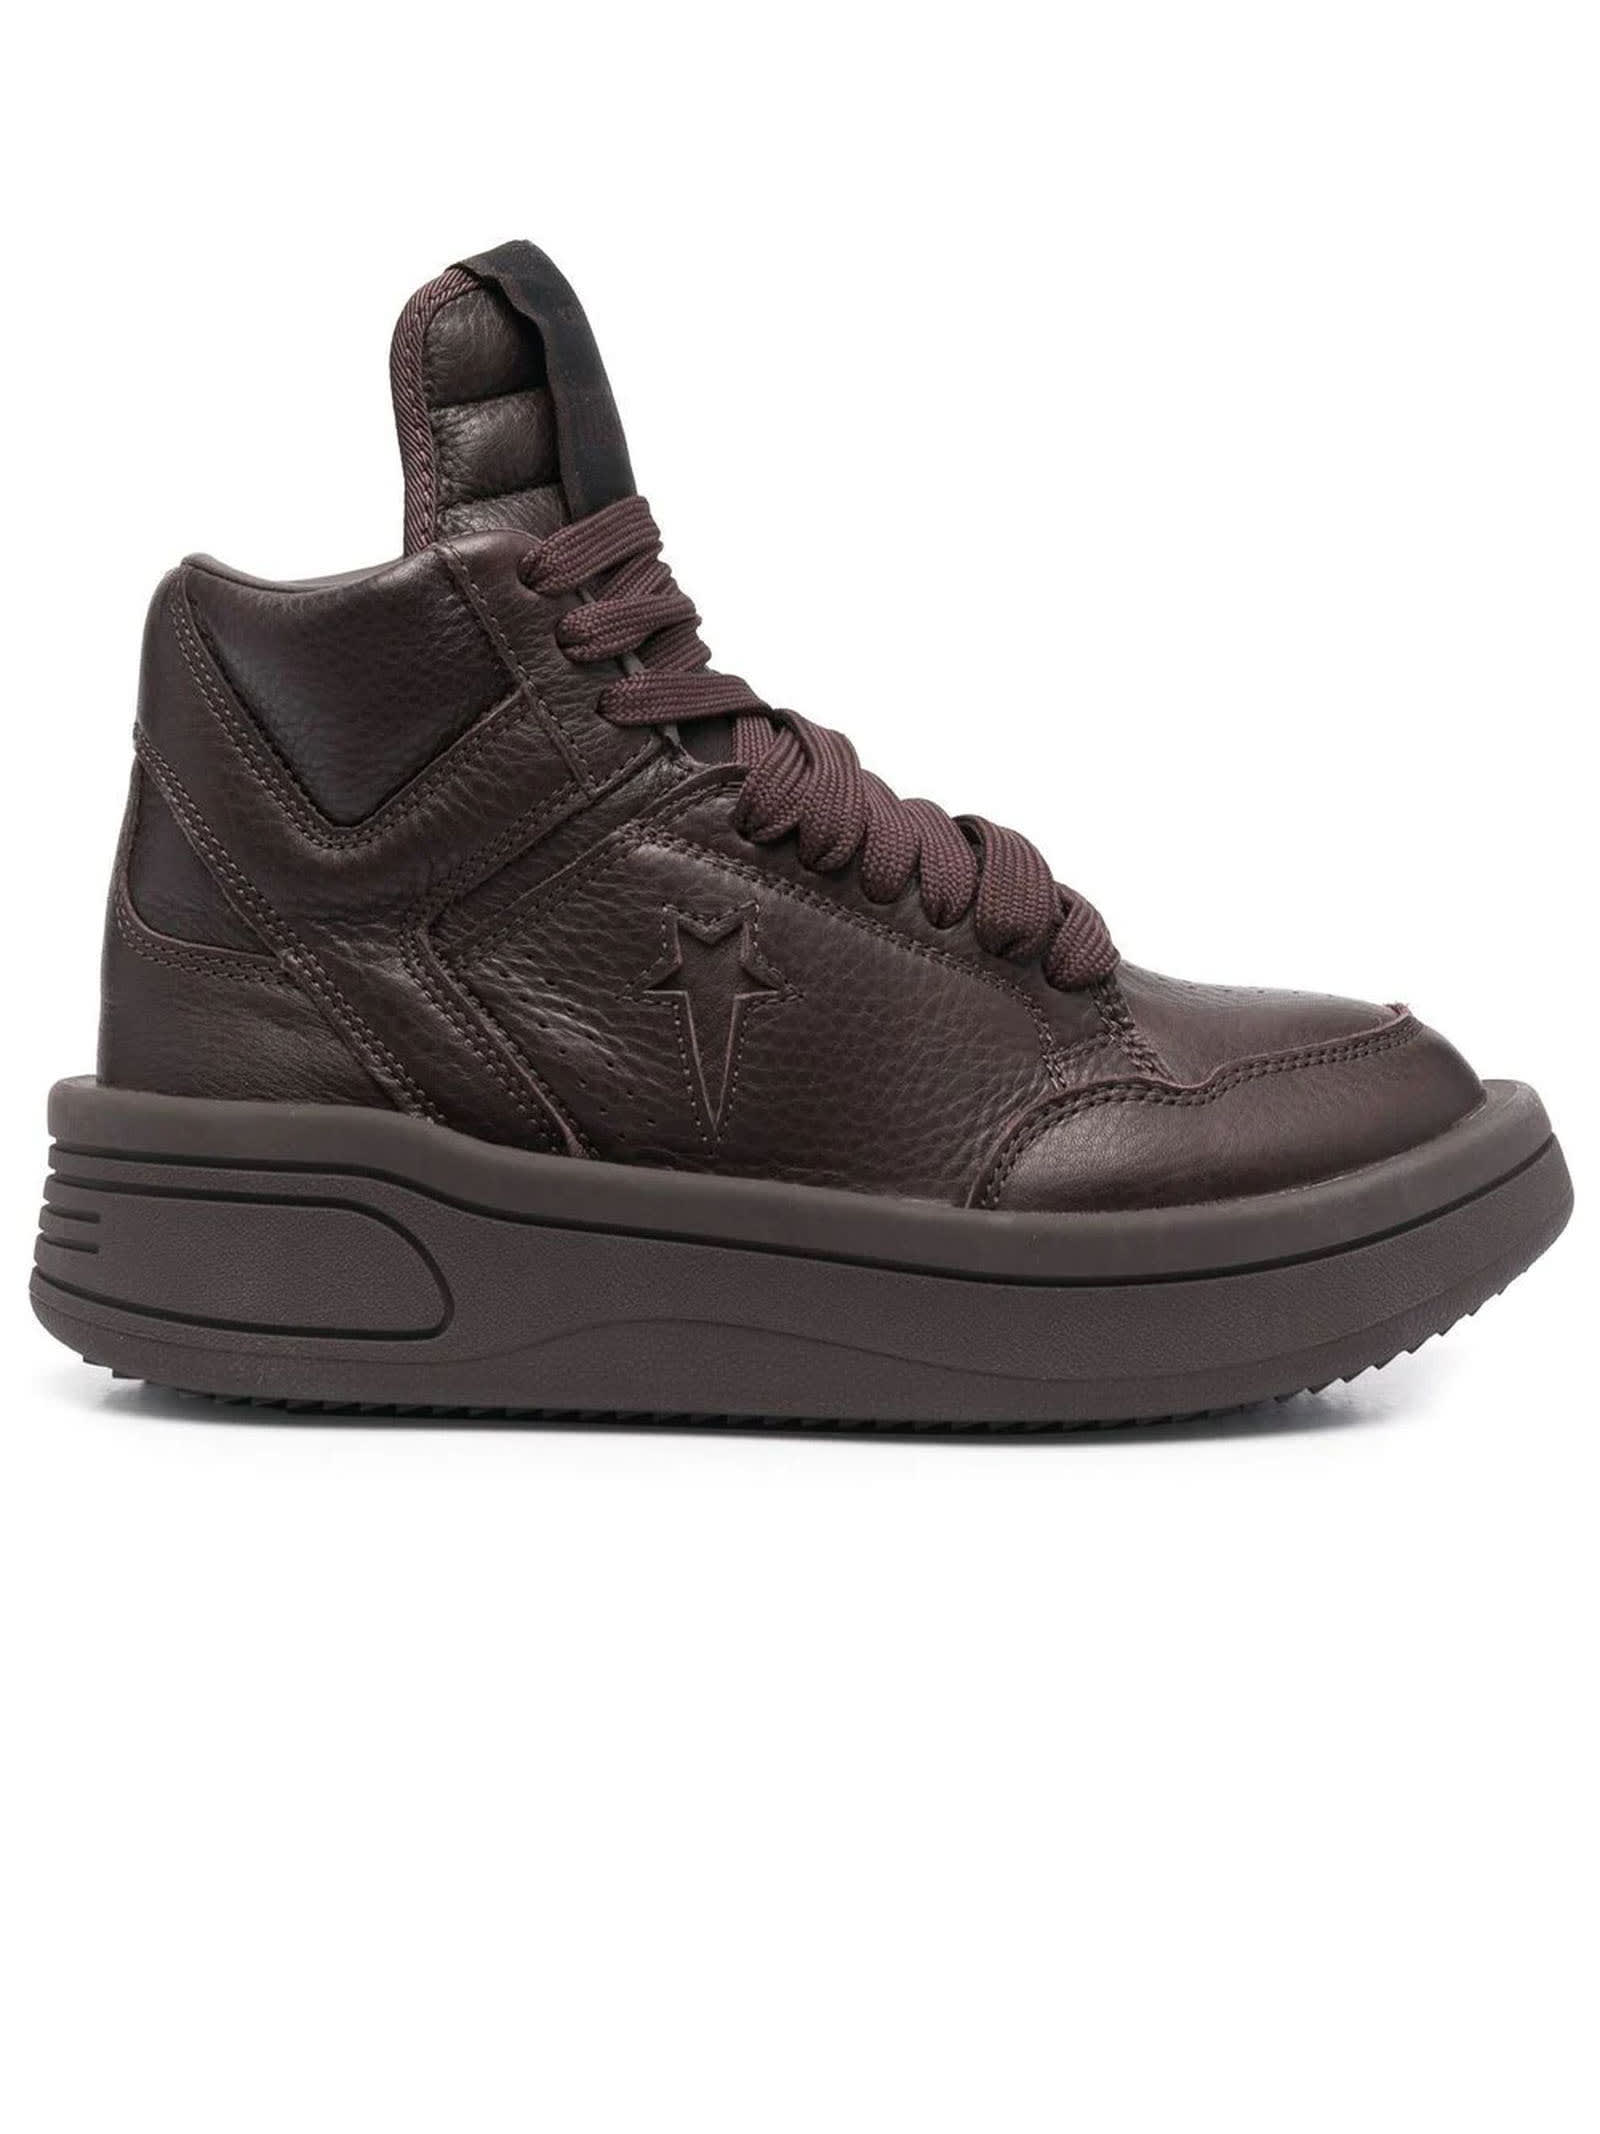 DRKSHDW Burgundy Leather Hi-top Sneakers